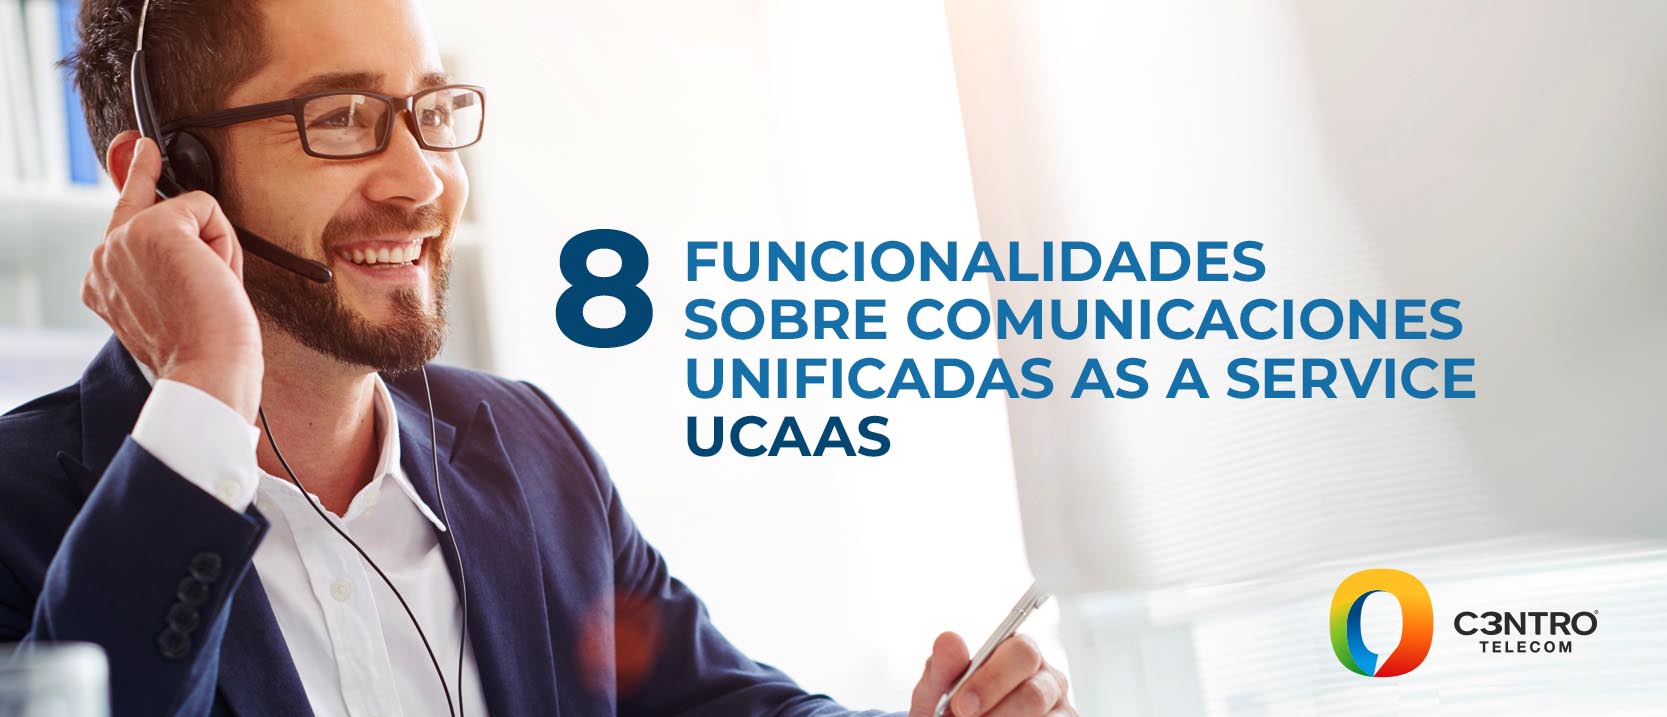 Comunicaciones-Unificadas-as-a-Service-UCaaS